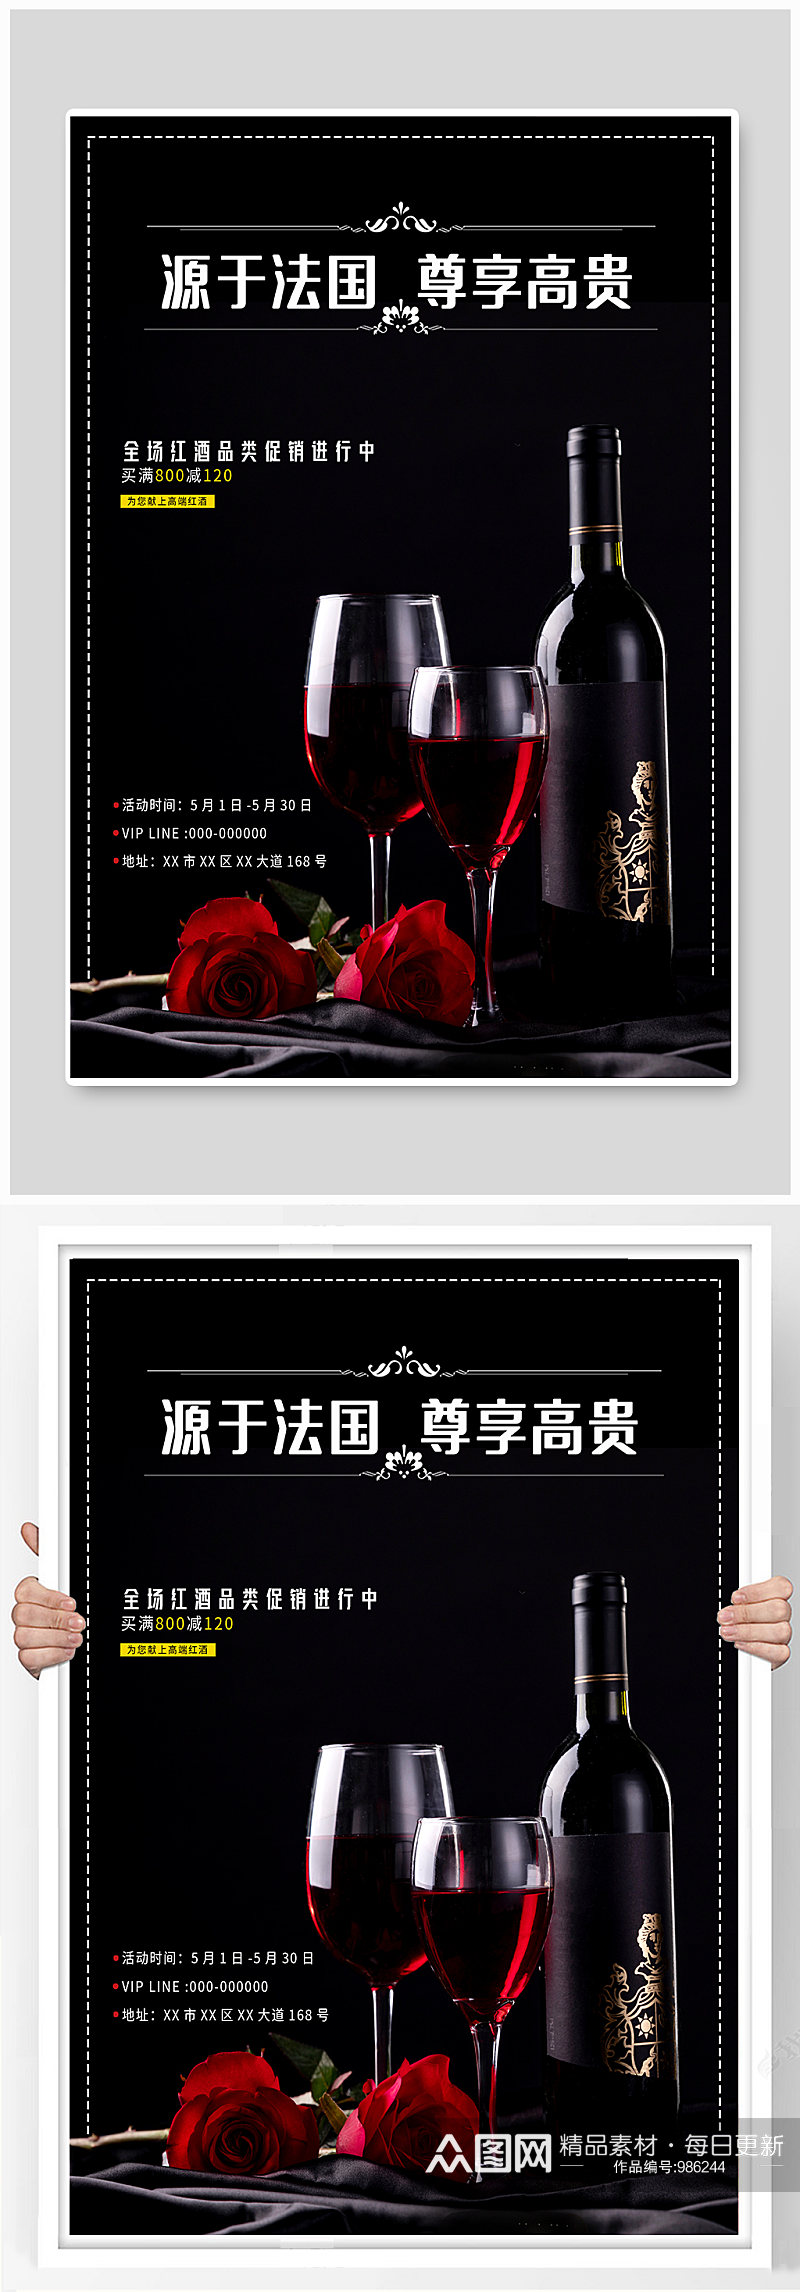 红酒酒产品宣传海报素材